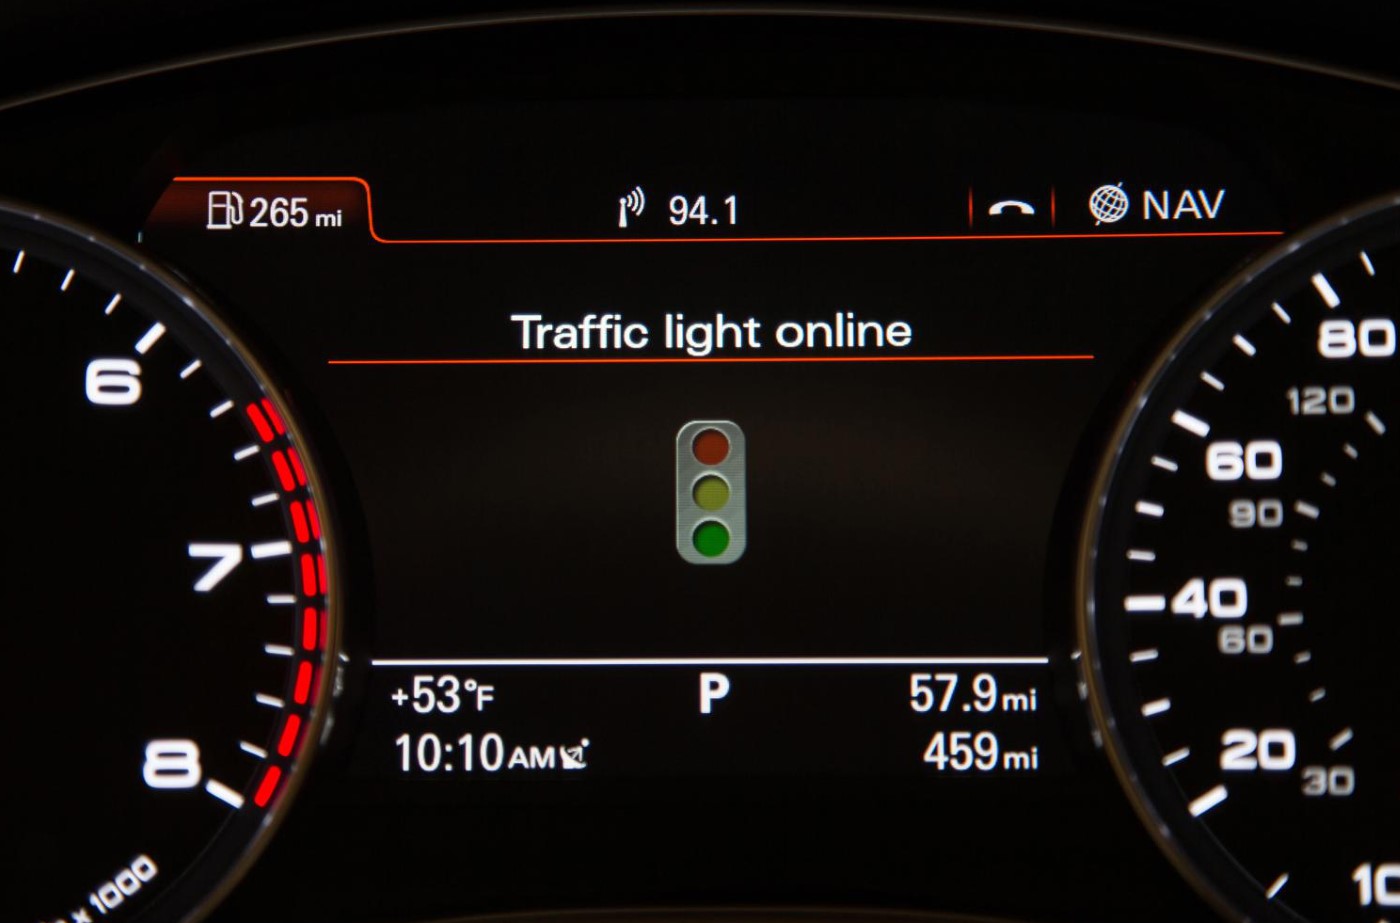  (Video) Nuevos coches de Audi avisarán cuánto falta para el semáforo en verde